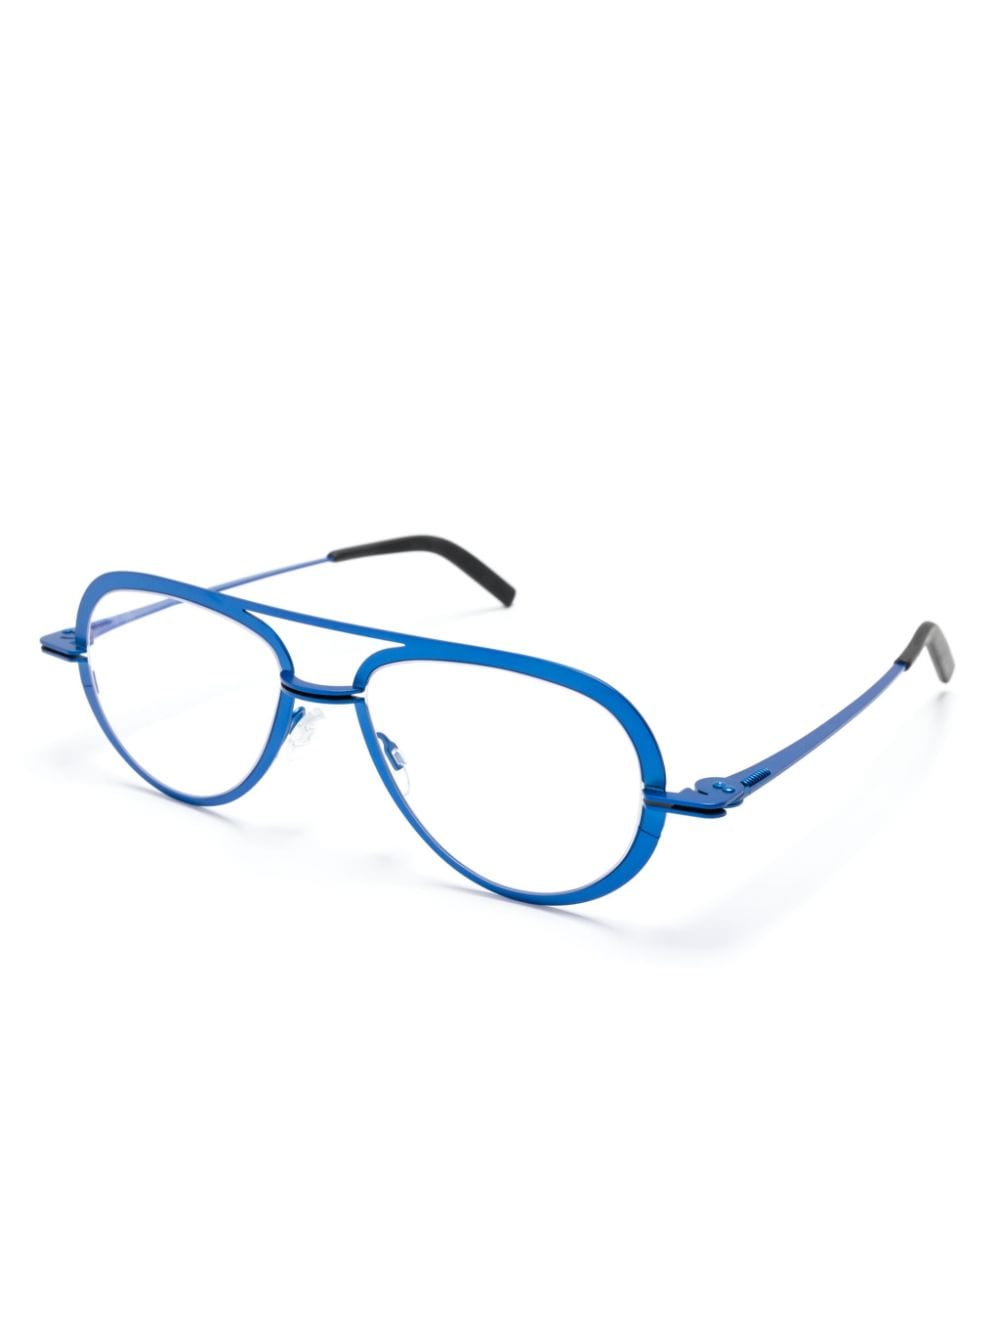 Theo Eyewear Crispy bril met piloten montuur - Blauw